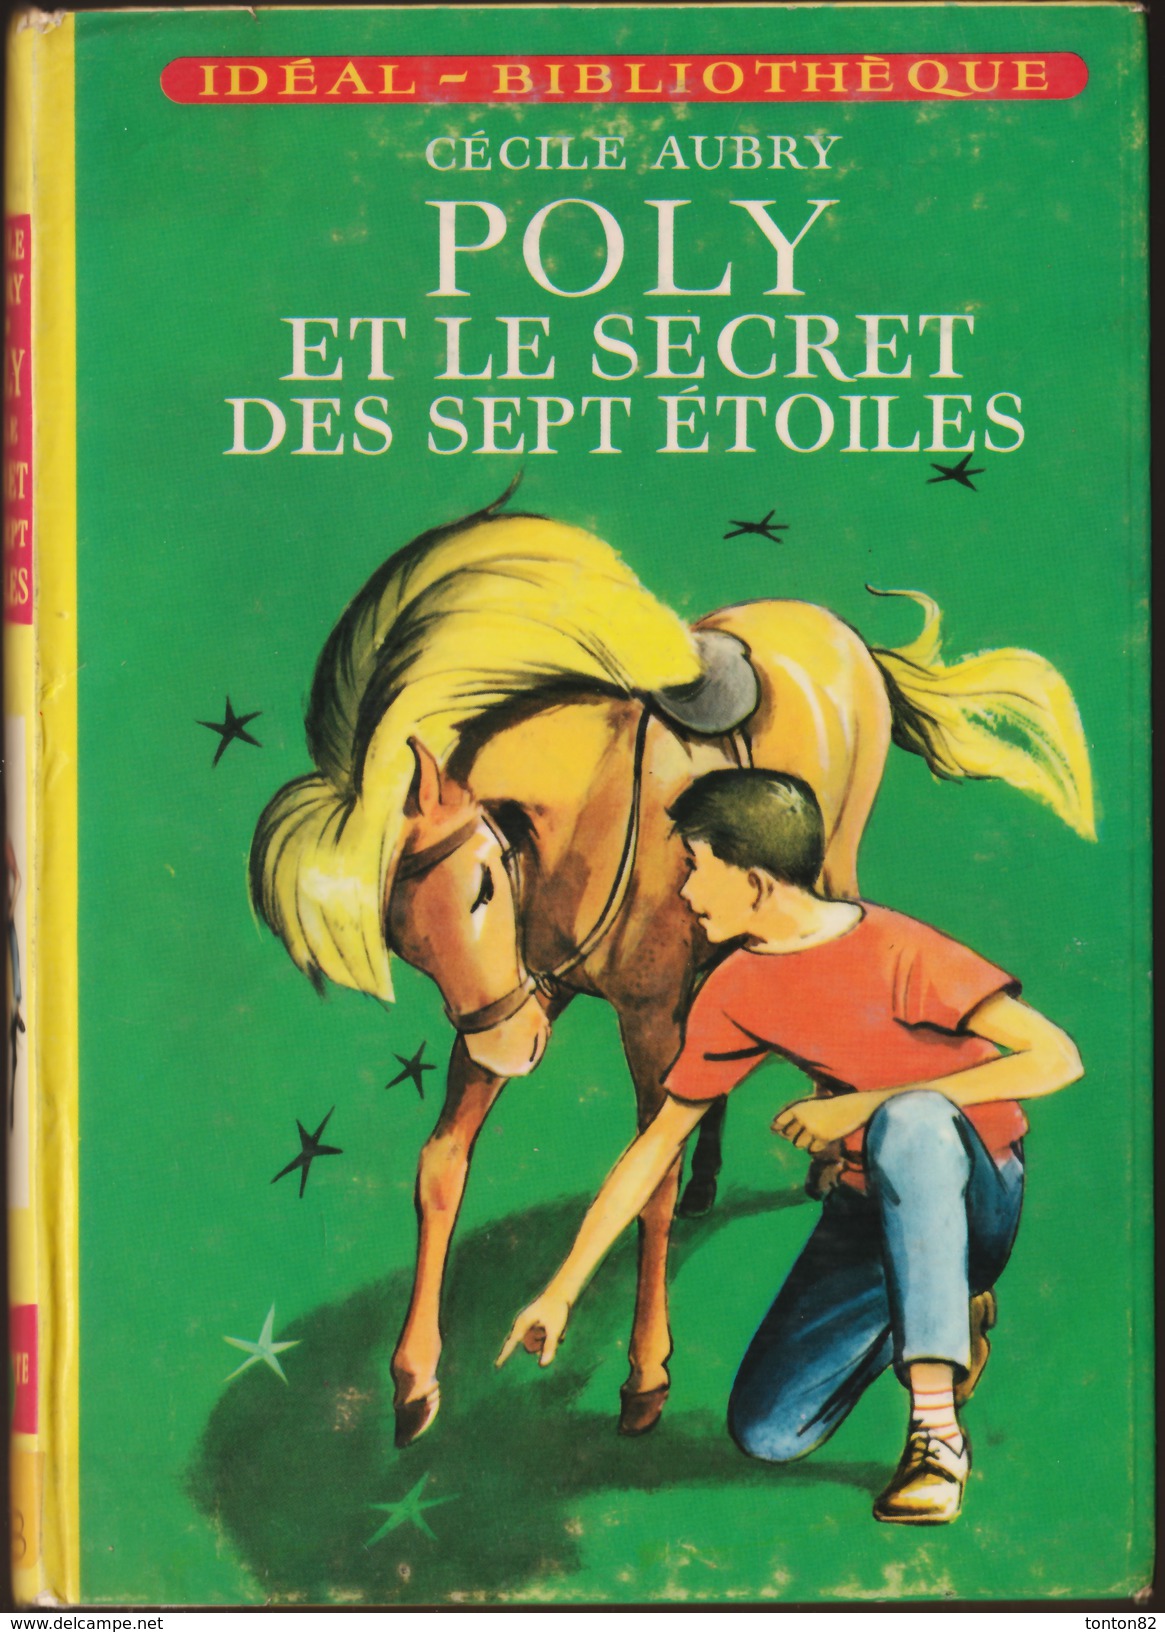 Cécile Aubry - POLY Et Le Secret Des Sept étoiles - Idéal - Bibliothèque - ( 1966 ) . - Ideal Bibliotheque